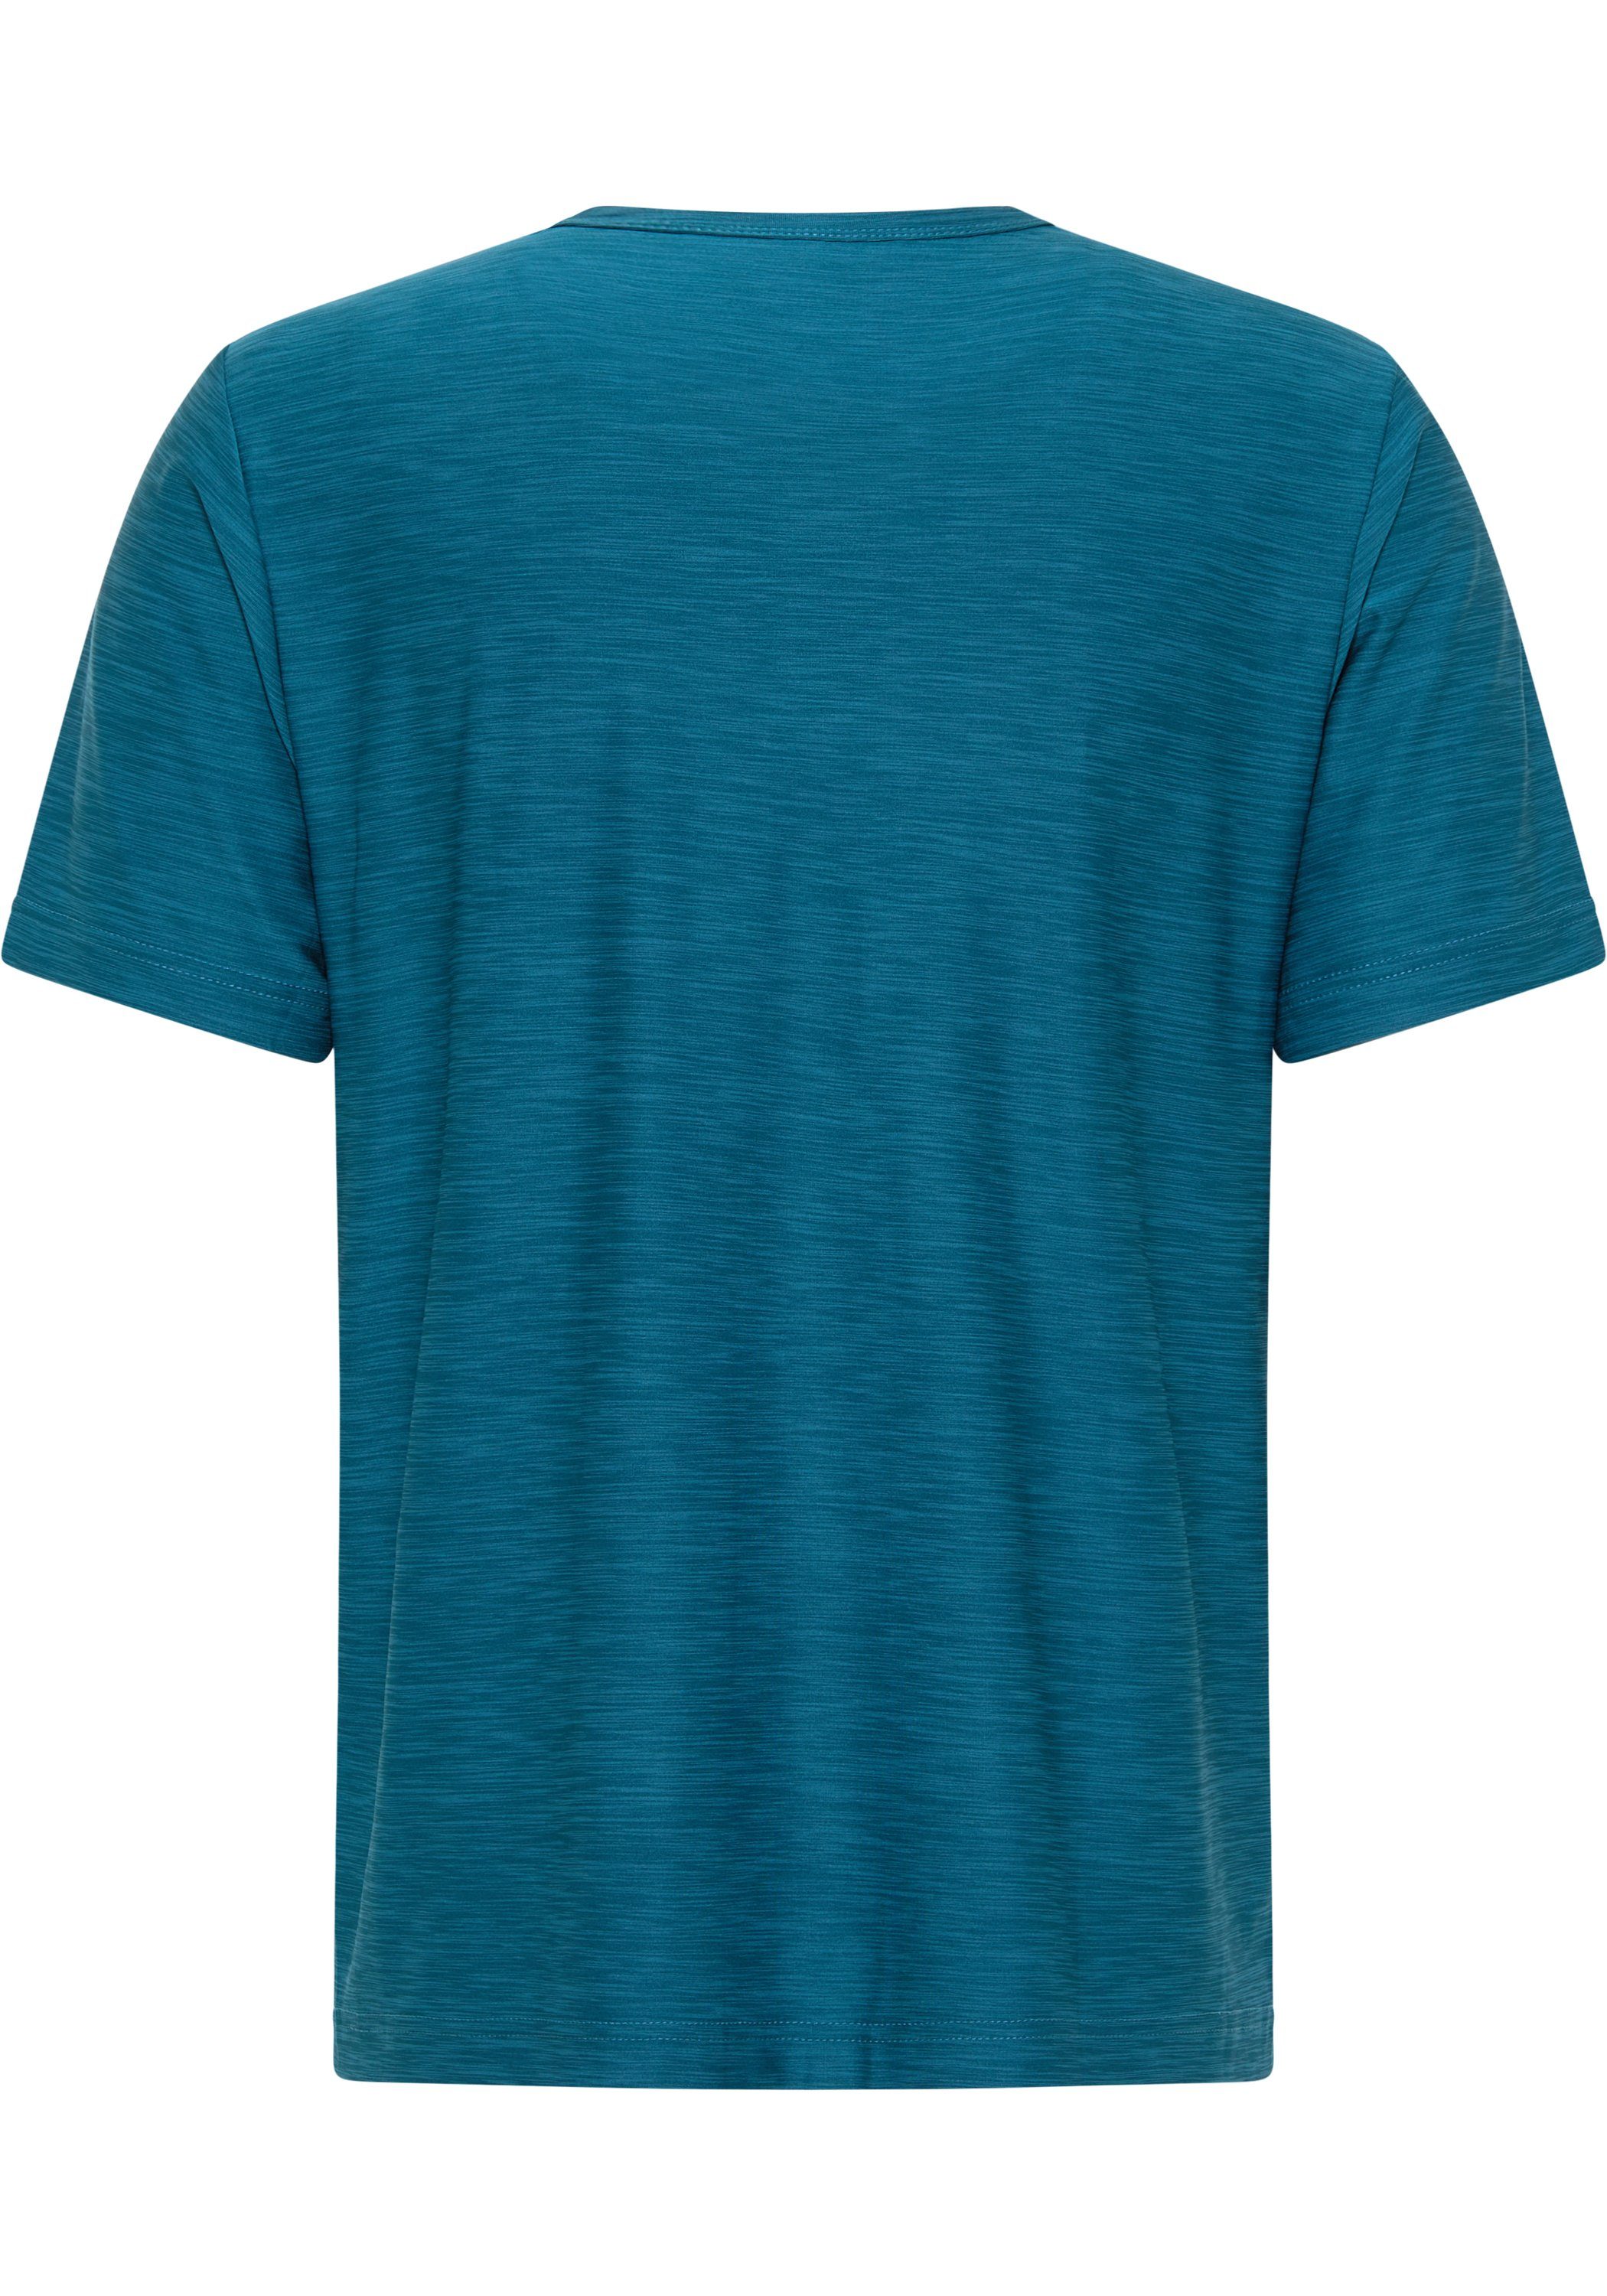 Joy Sportswear T-Shirt T-Shirt VITUS melange turquoise deep